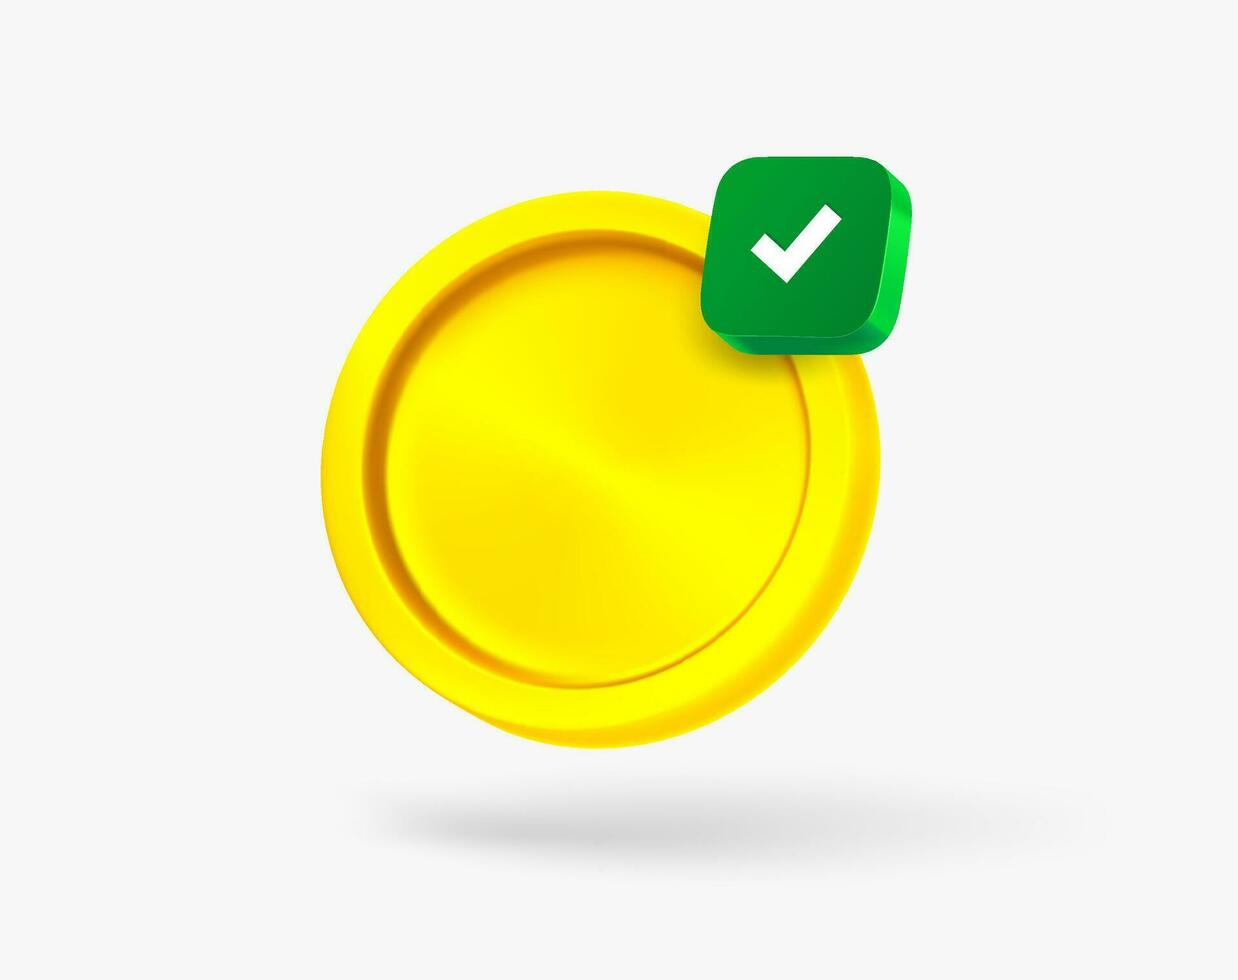 Golden coin with green checkmark. 3d vector icon